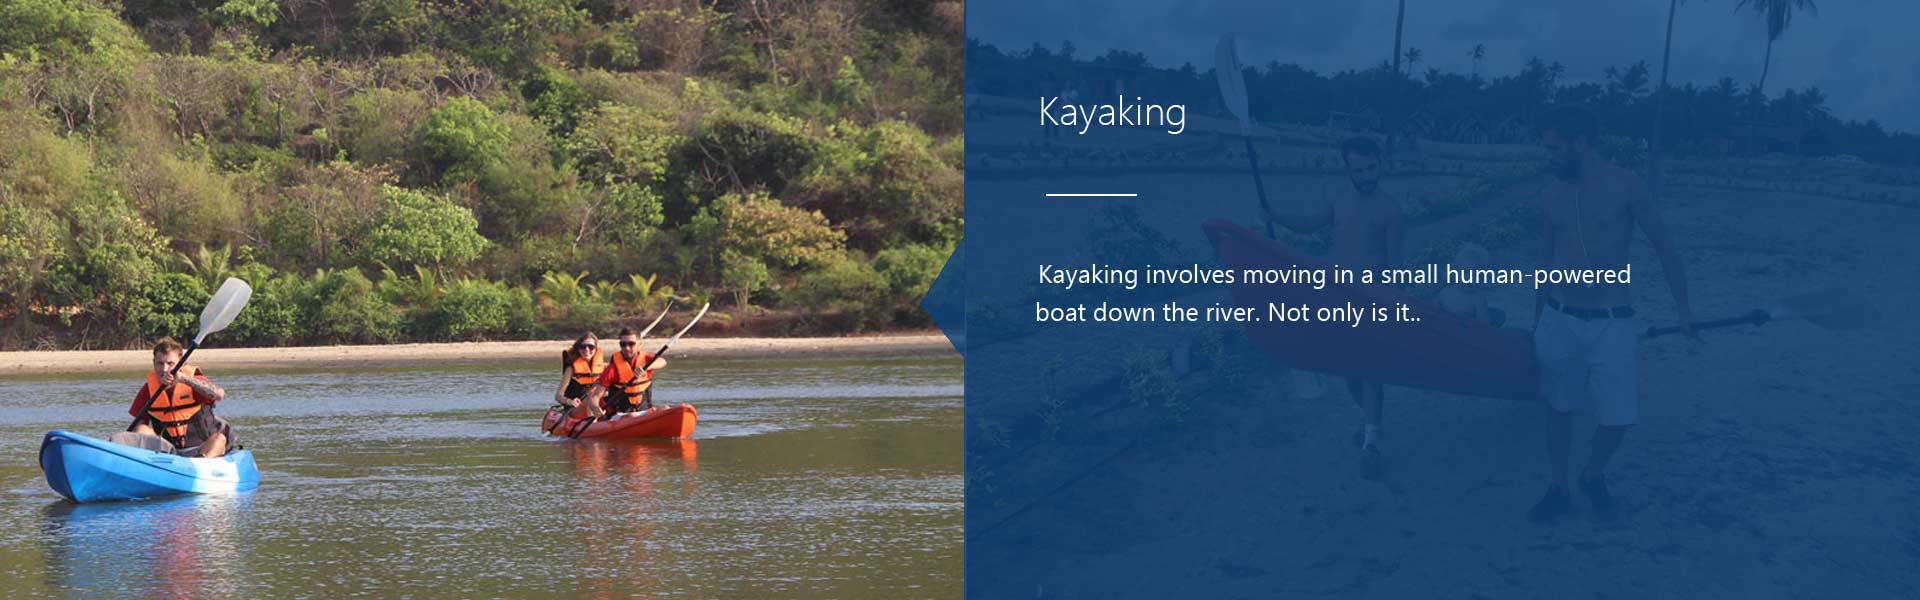 kayaking watercraft in india